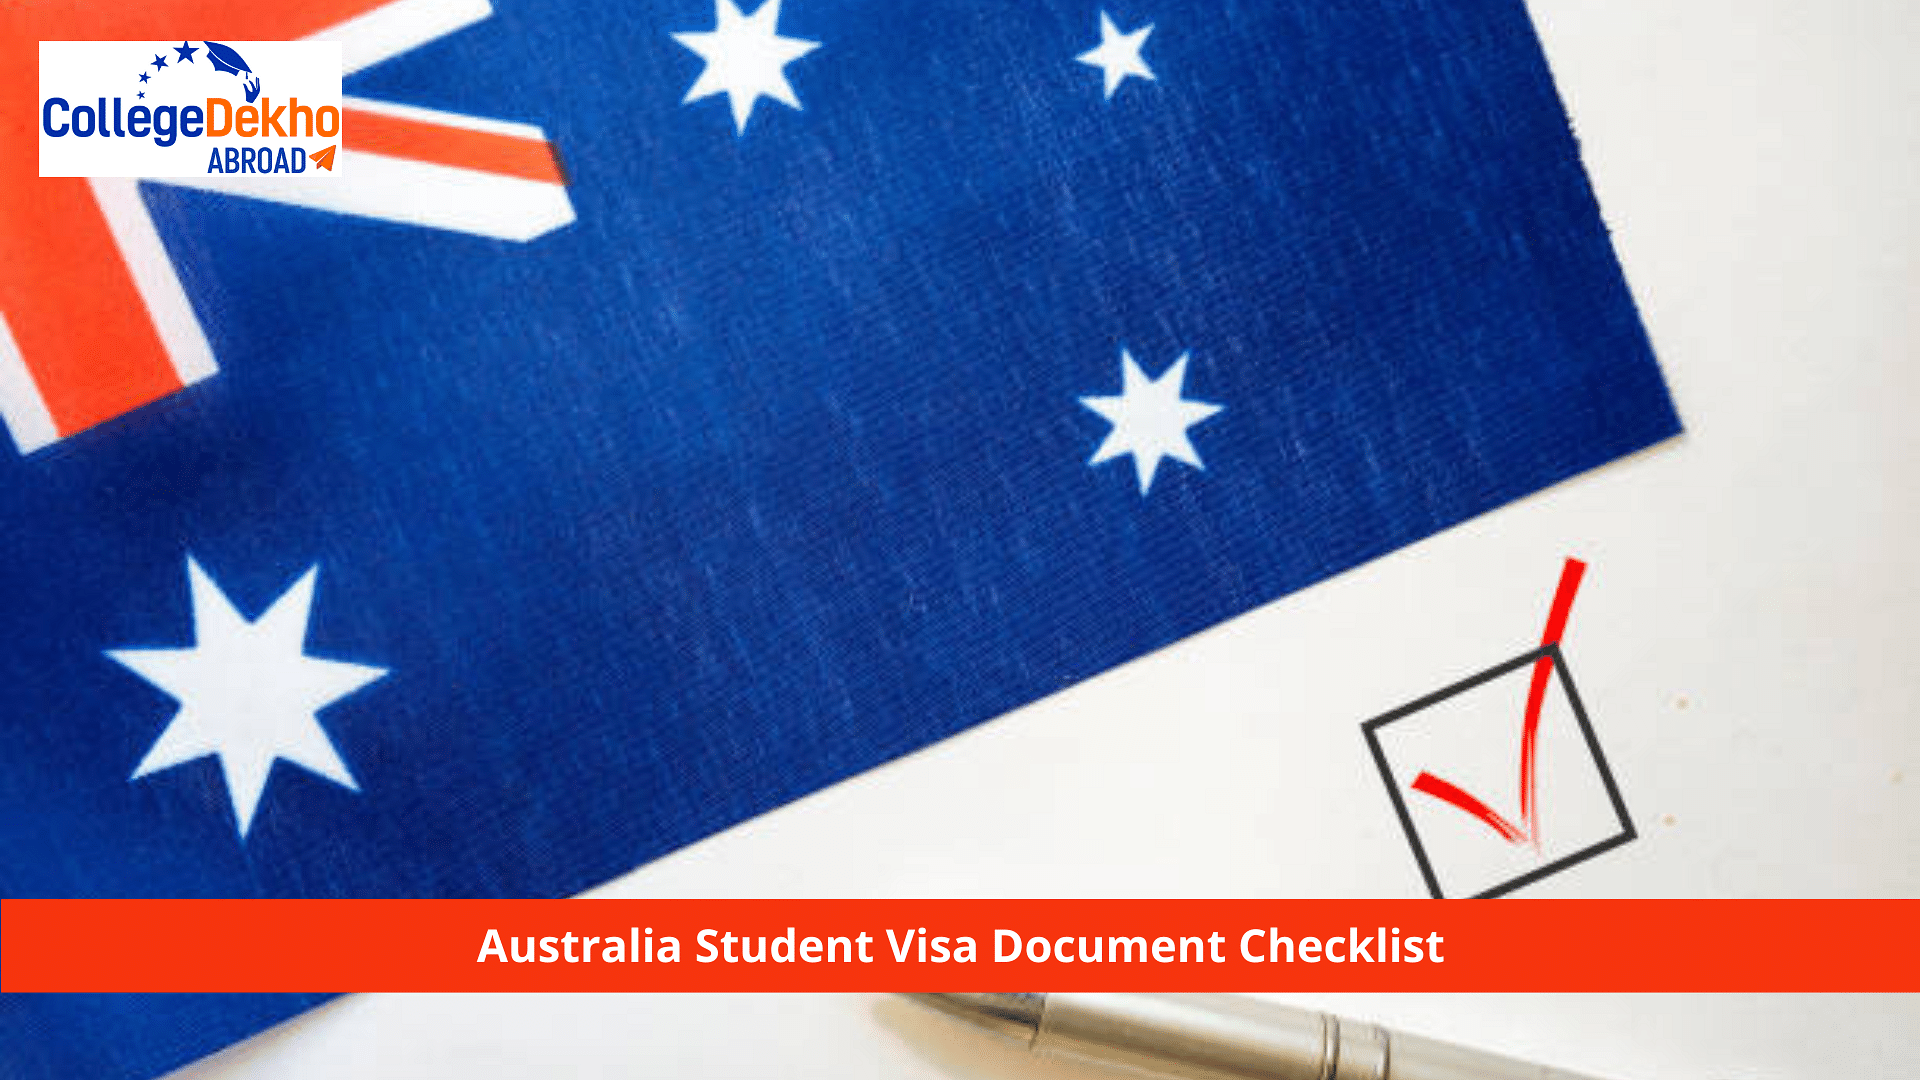 Australia Student Visa Document Checklist